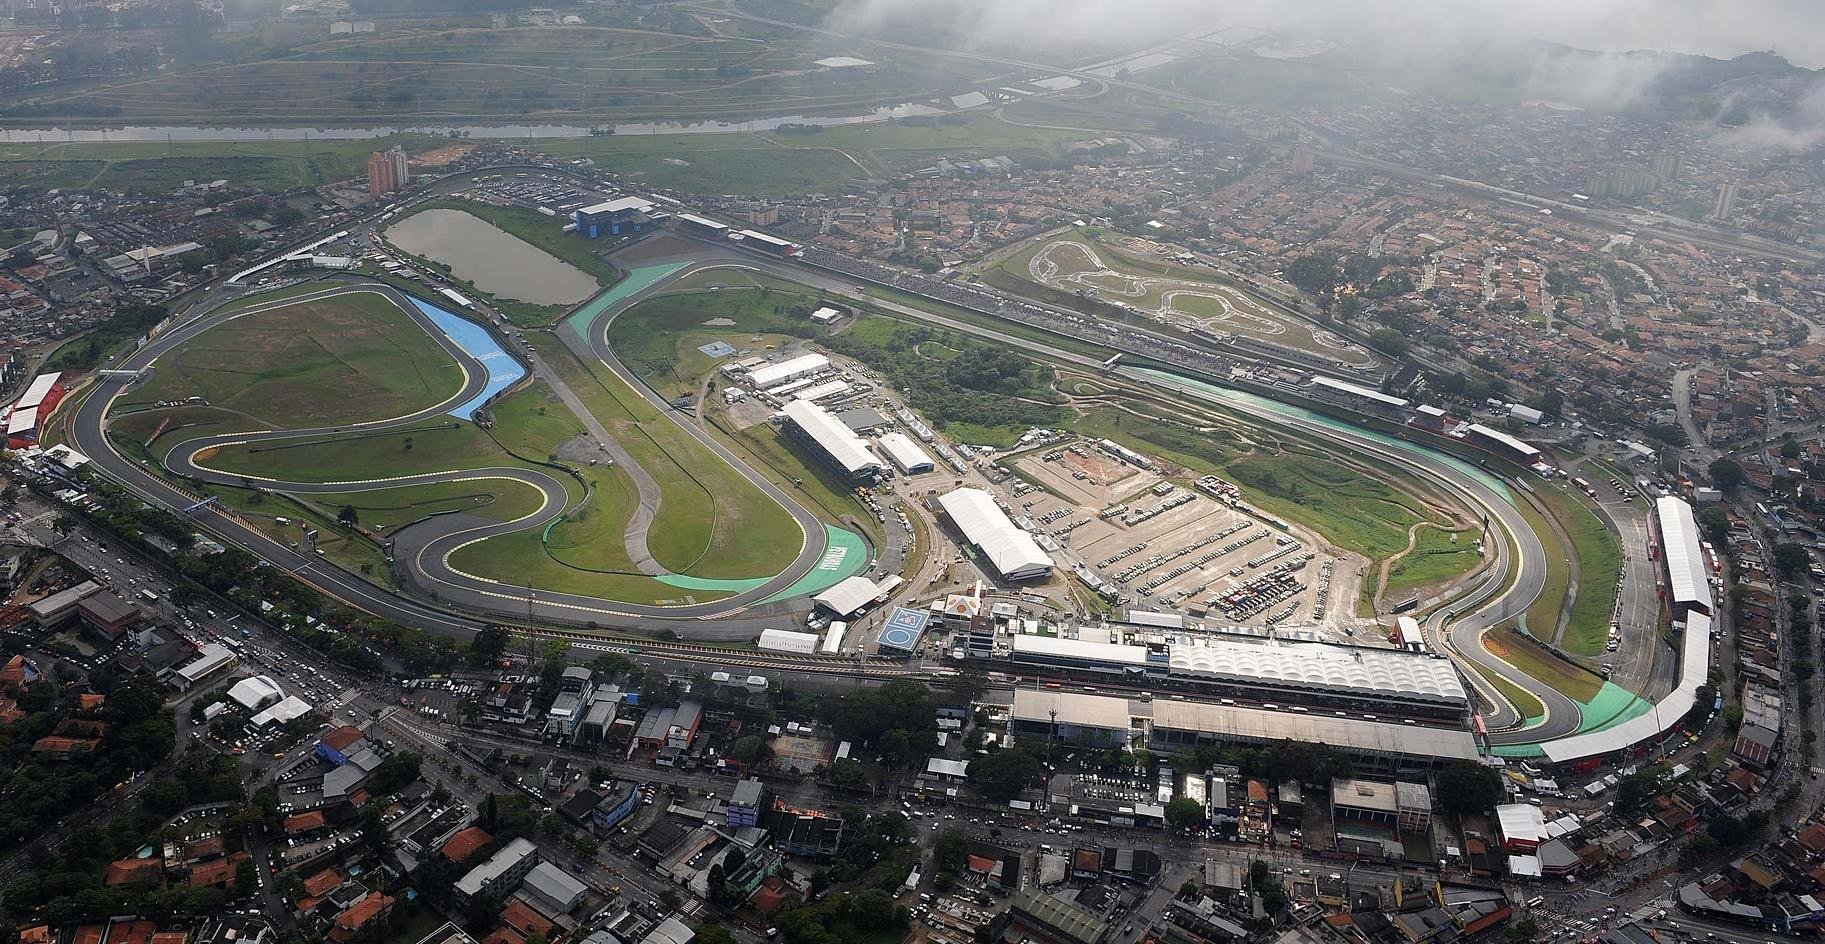 Circuit José Carlos Pace (Interlagos), Sao Paulo, Brésil